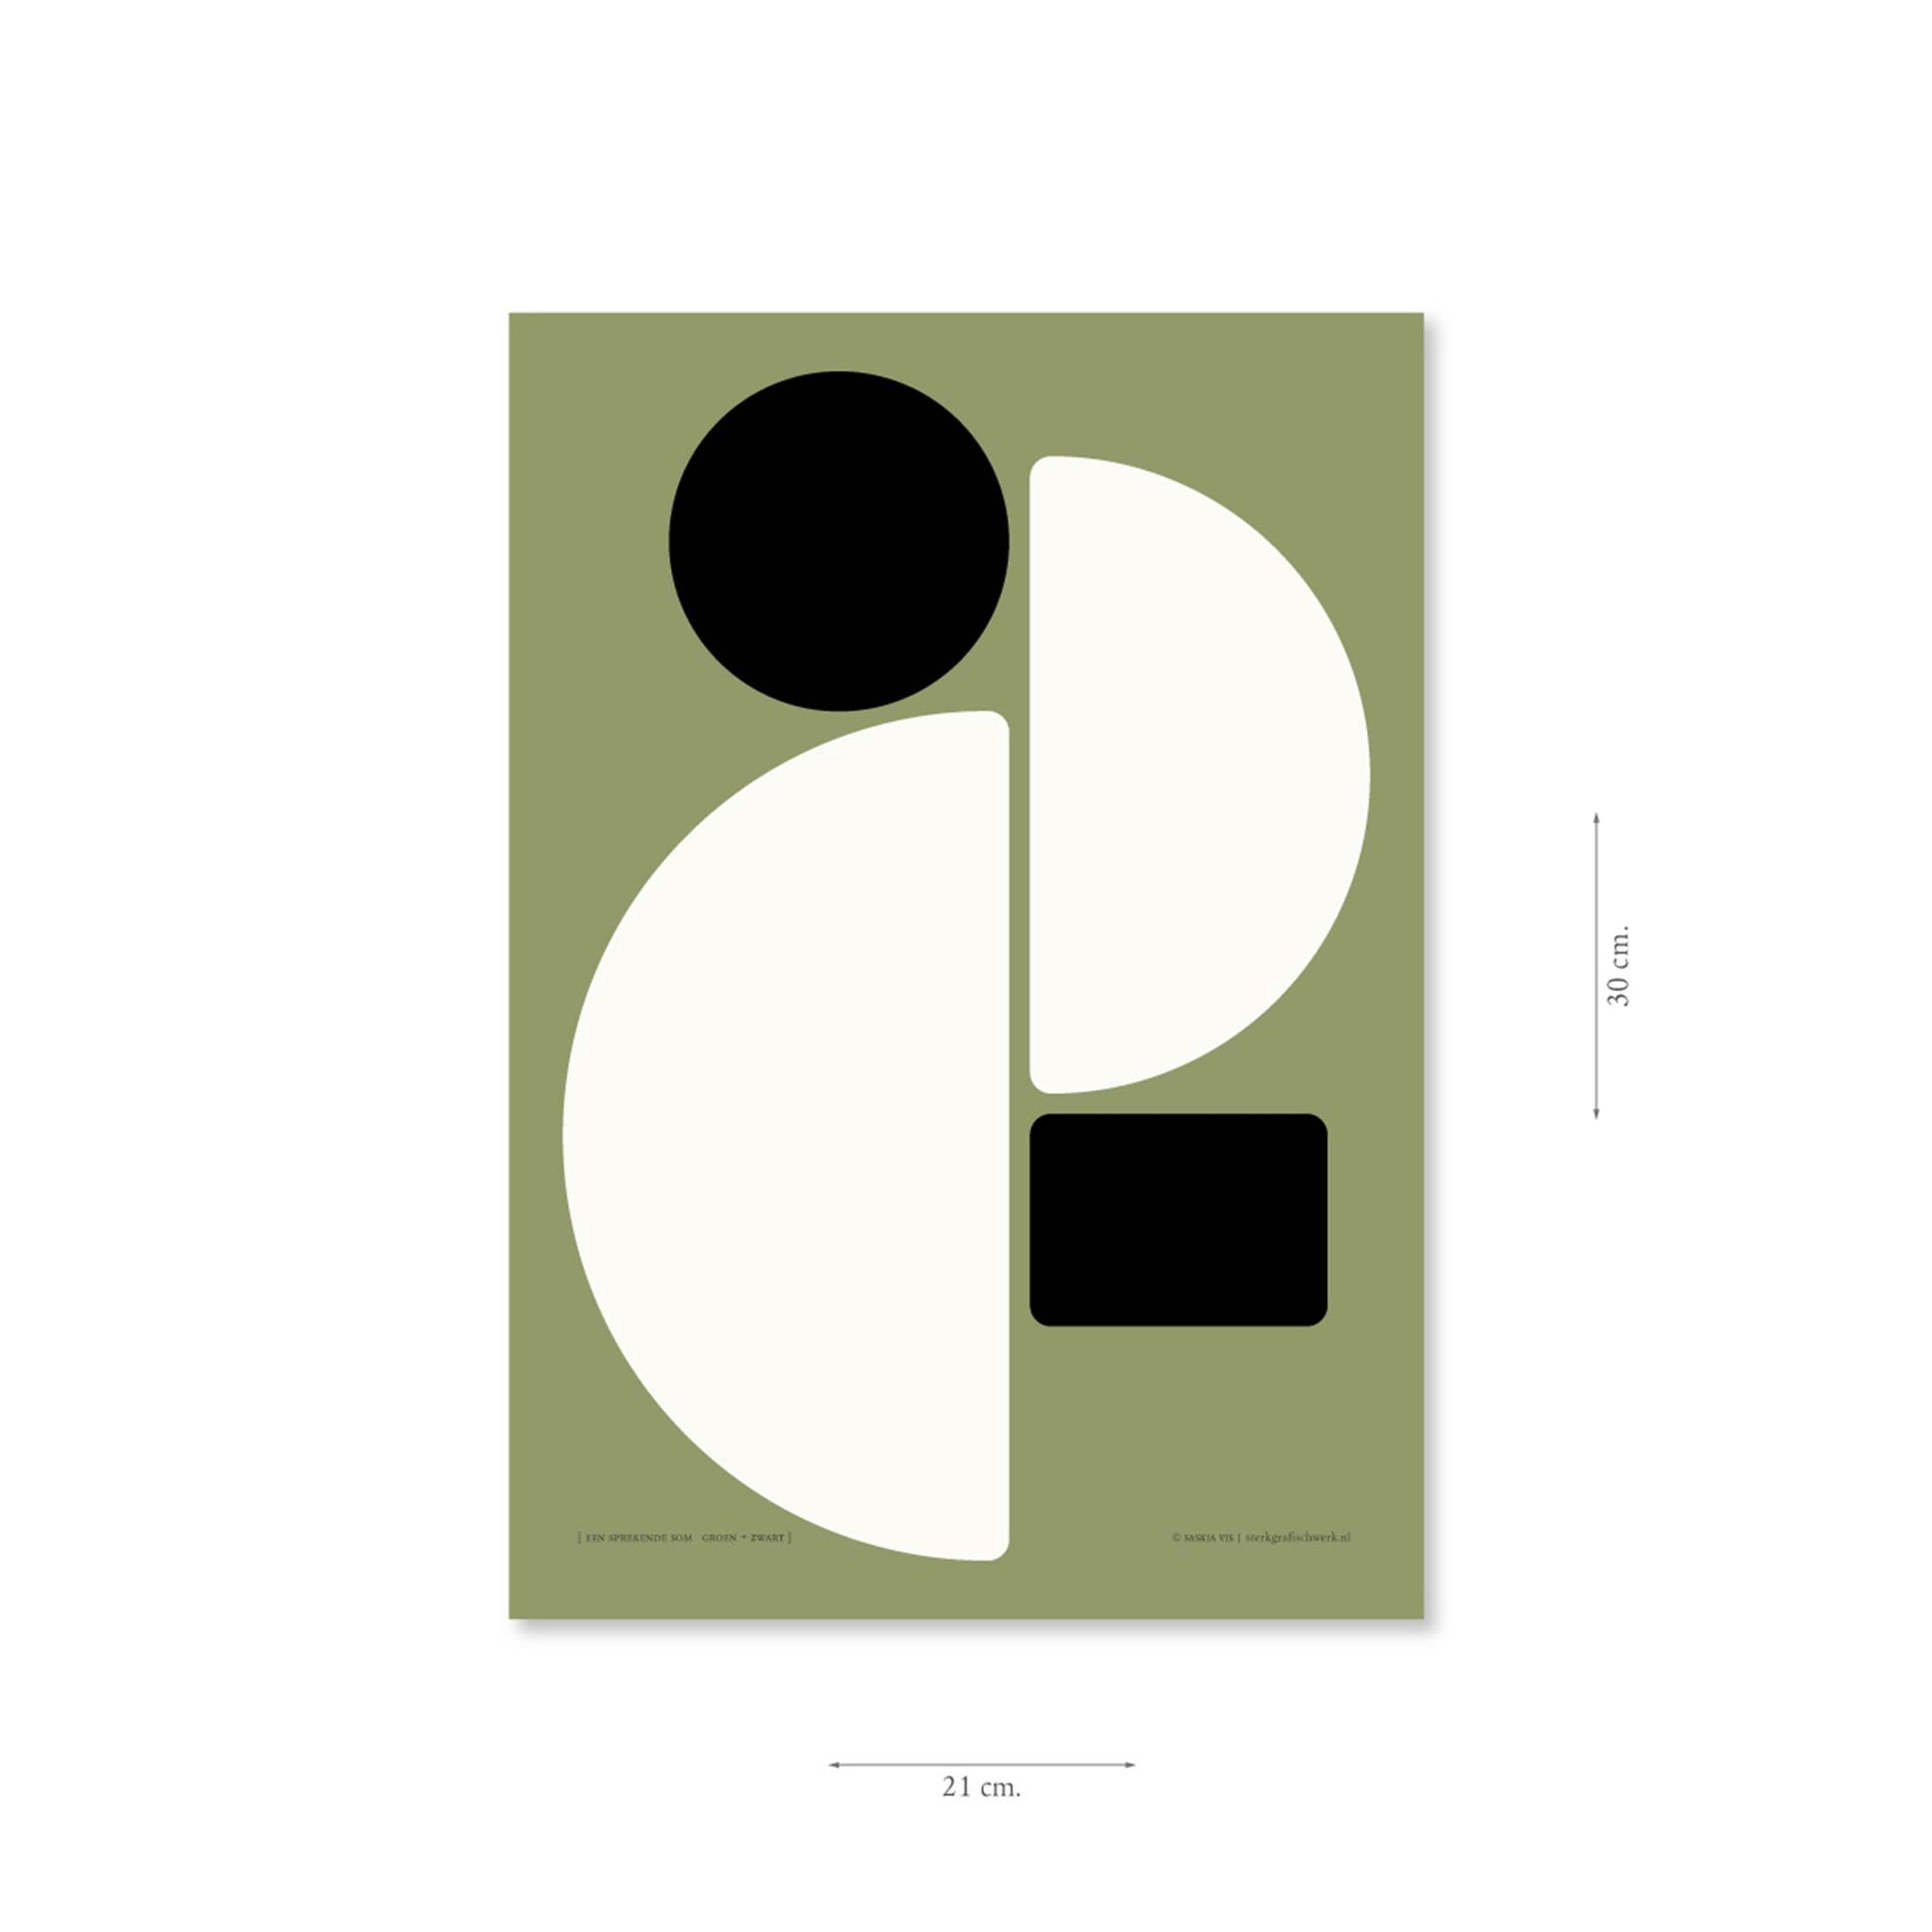 Productafbeelding poster "een sprekende som groen+zwart" met aanduiding van het formaat erop weergegeven 21 x 30 cm